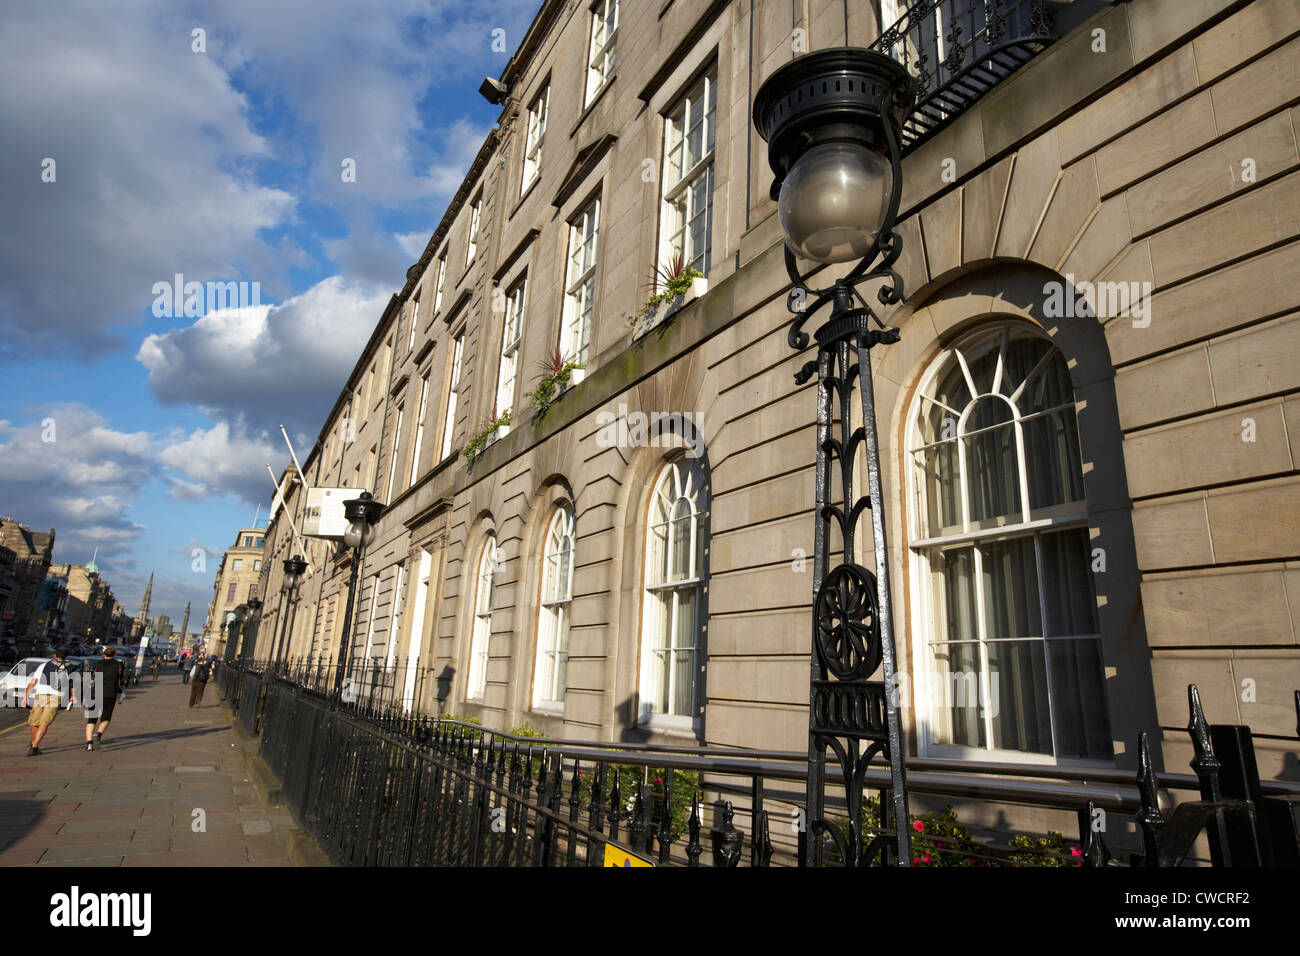 George street case cittadine Georgiane e illuminazione stradale scozzese di Edimburgo Regno Unito Regno Unito Foto Stock